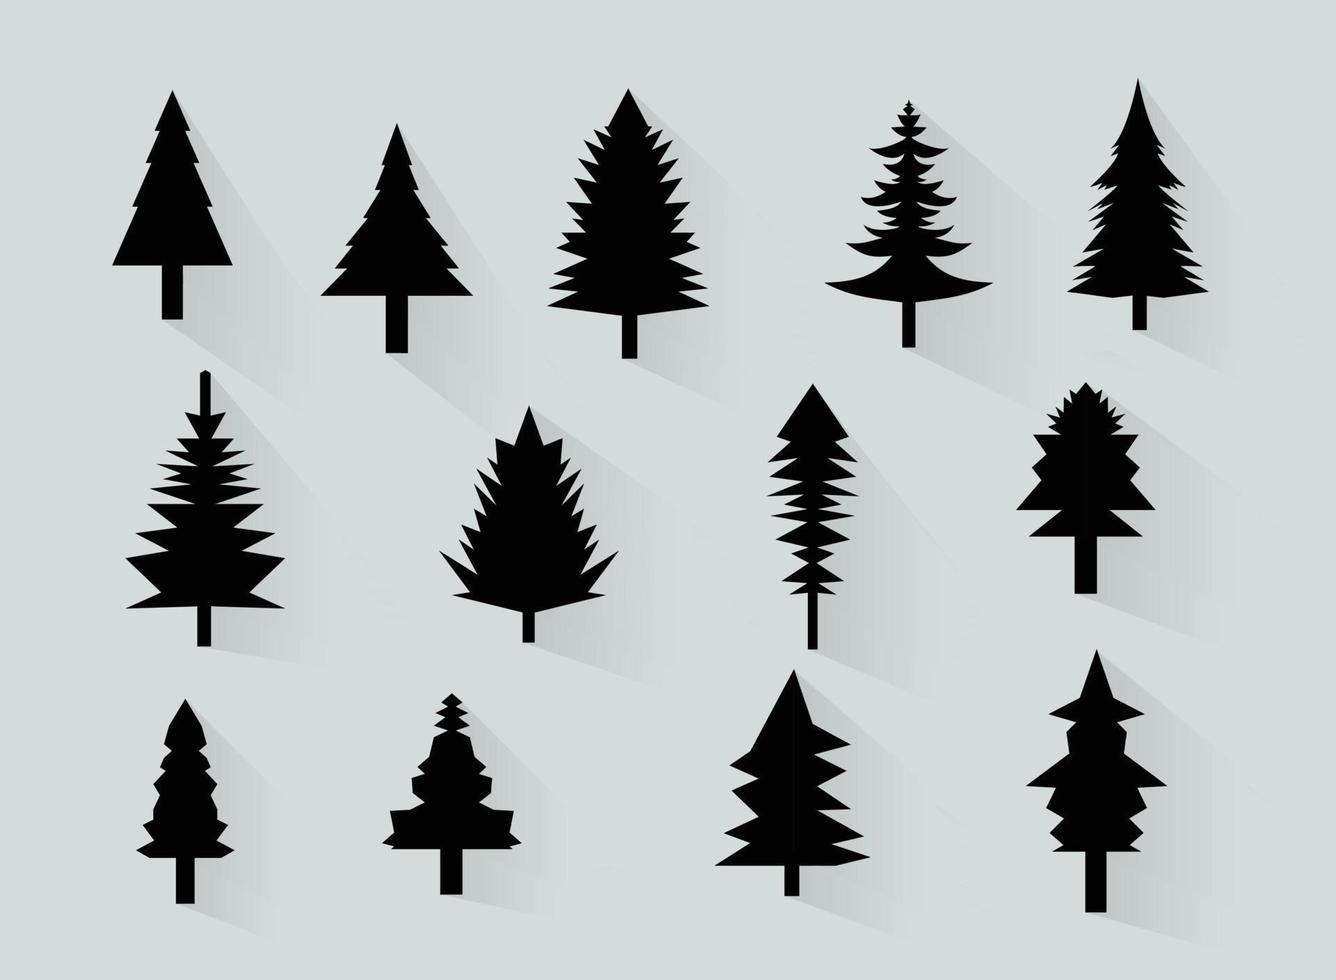 pijnboom boom vector illustratie silhouetten verzameling en wildernis voorwerpen naar creëren uw eigen natuur tafereel.